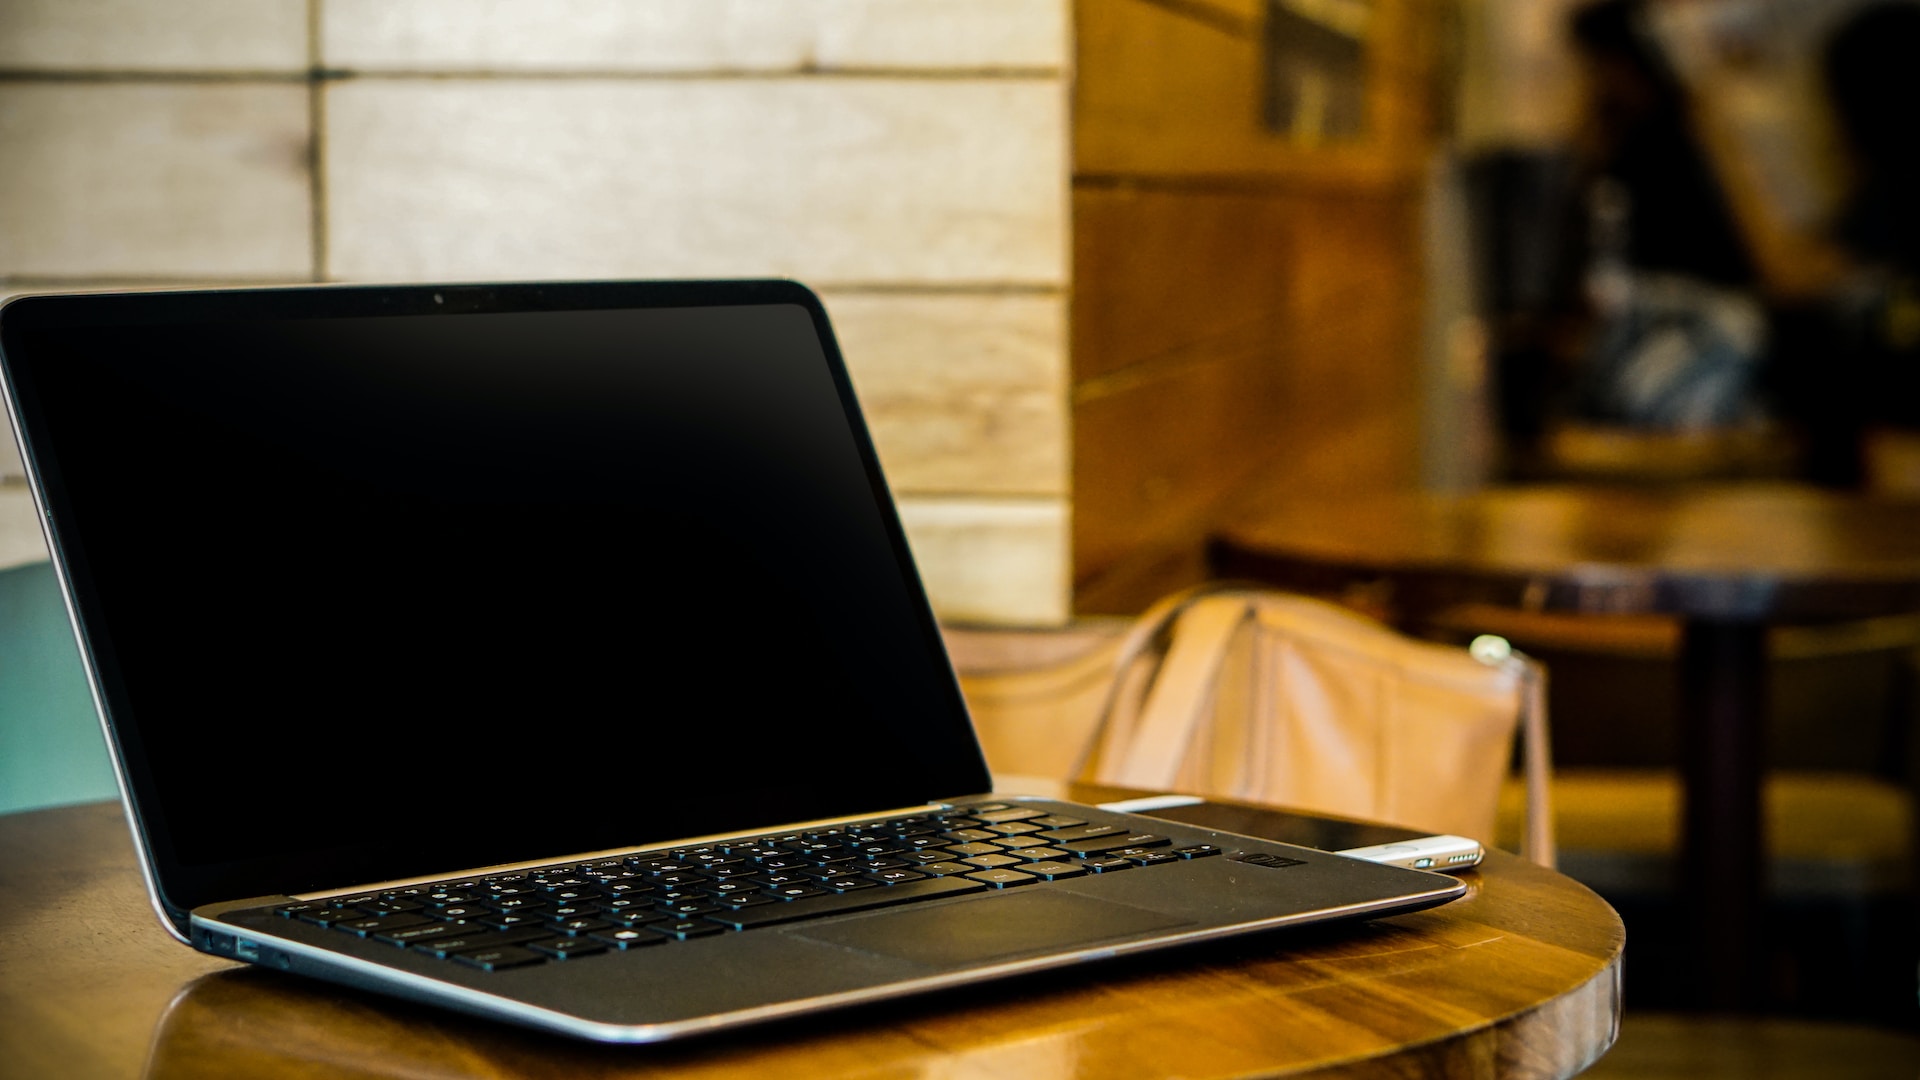 The Best Lenovo i7 Laptops: Our Top Picks